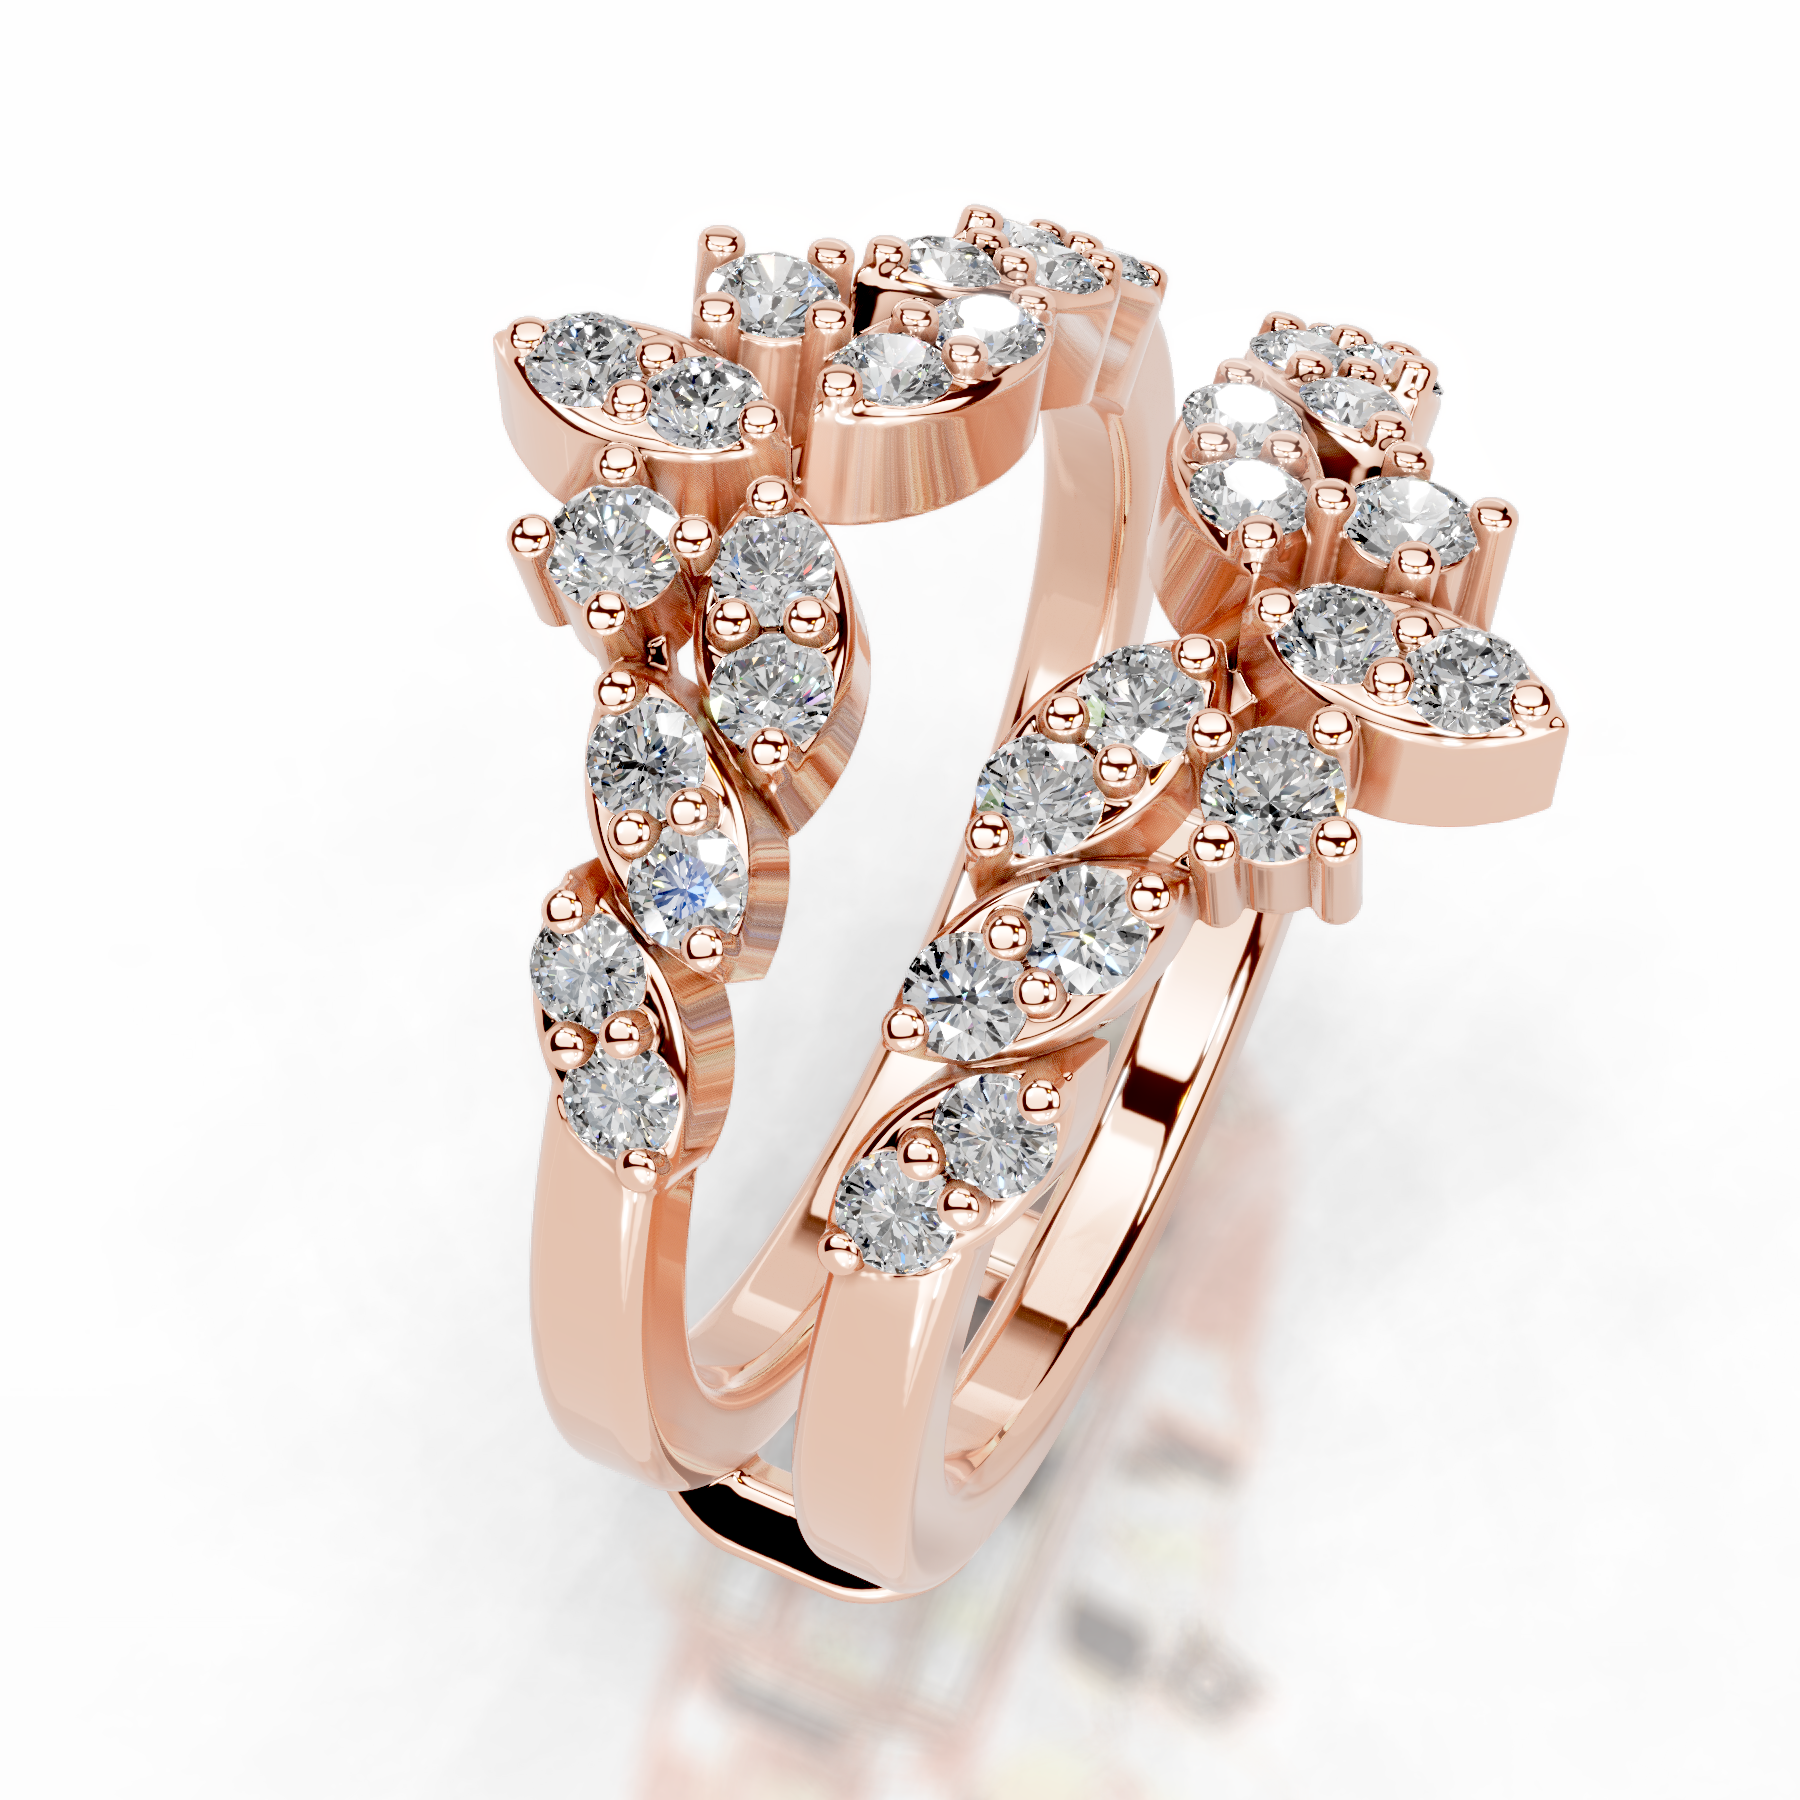 Nikita Diamond Wedding Ring   (0.70 Carat) -14K Rose Gold